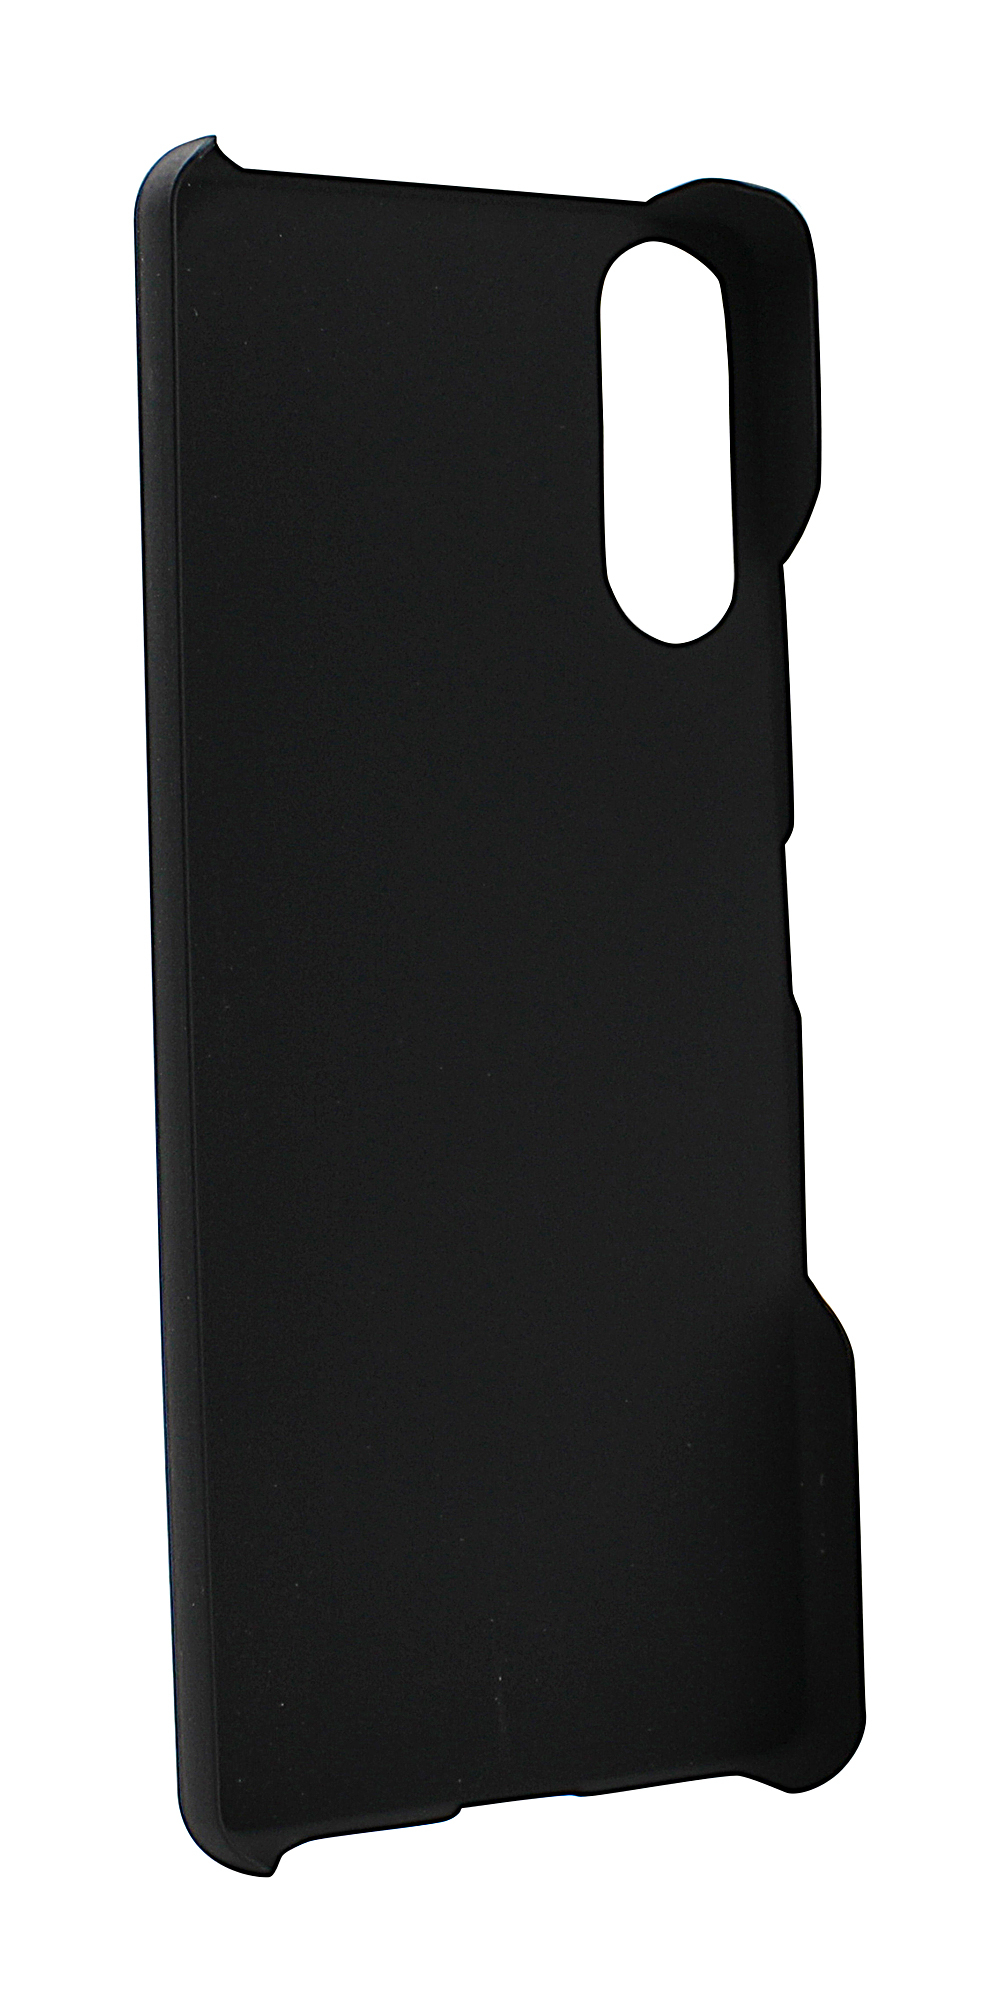 CoverInSkimblocker XL Magnet Fodral Sony Xperia 10 III (XQ-BT52)